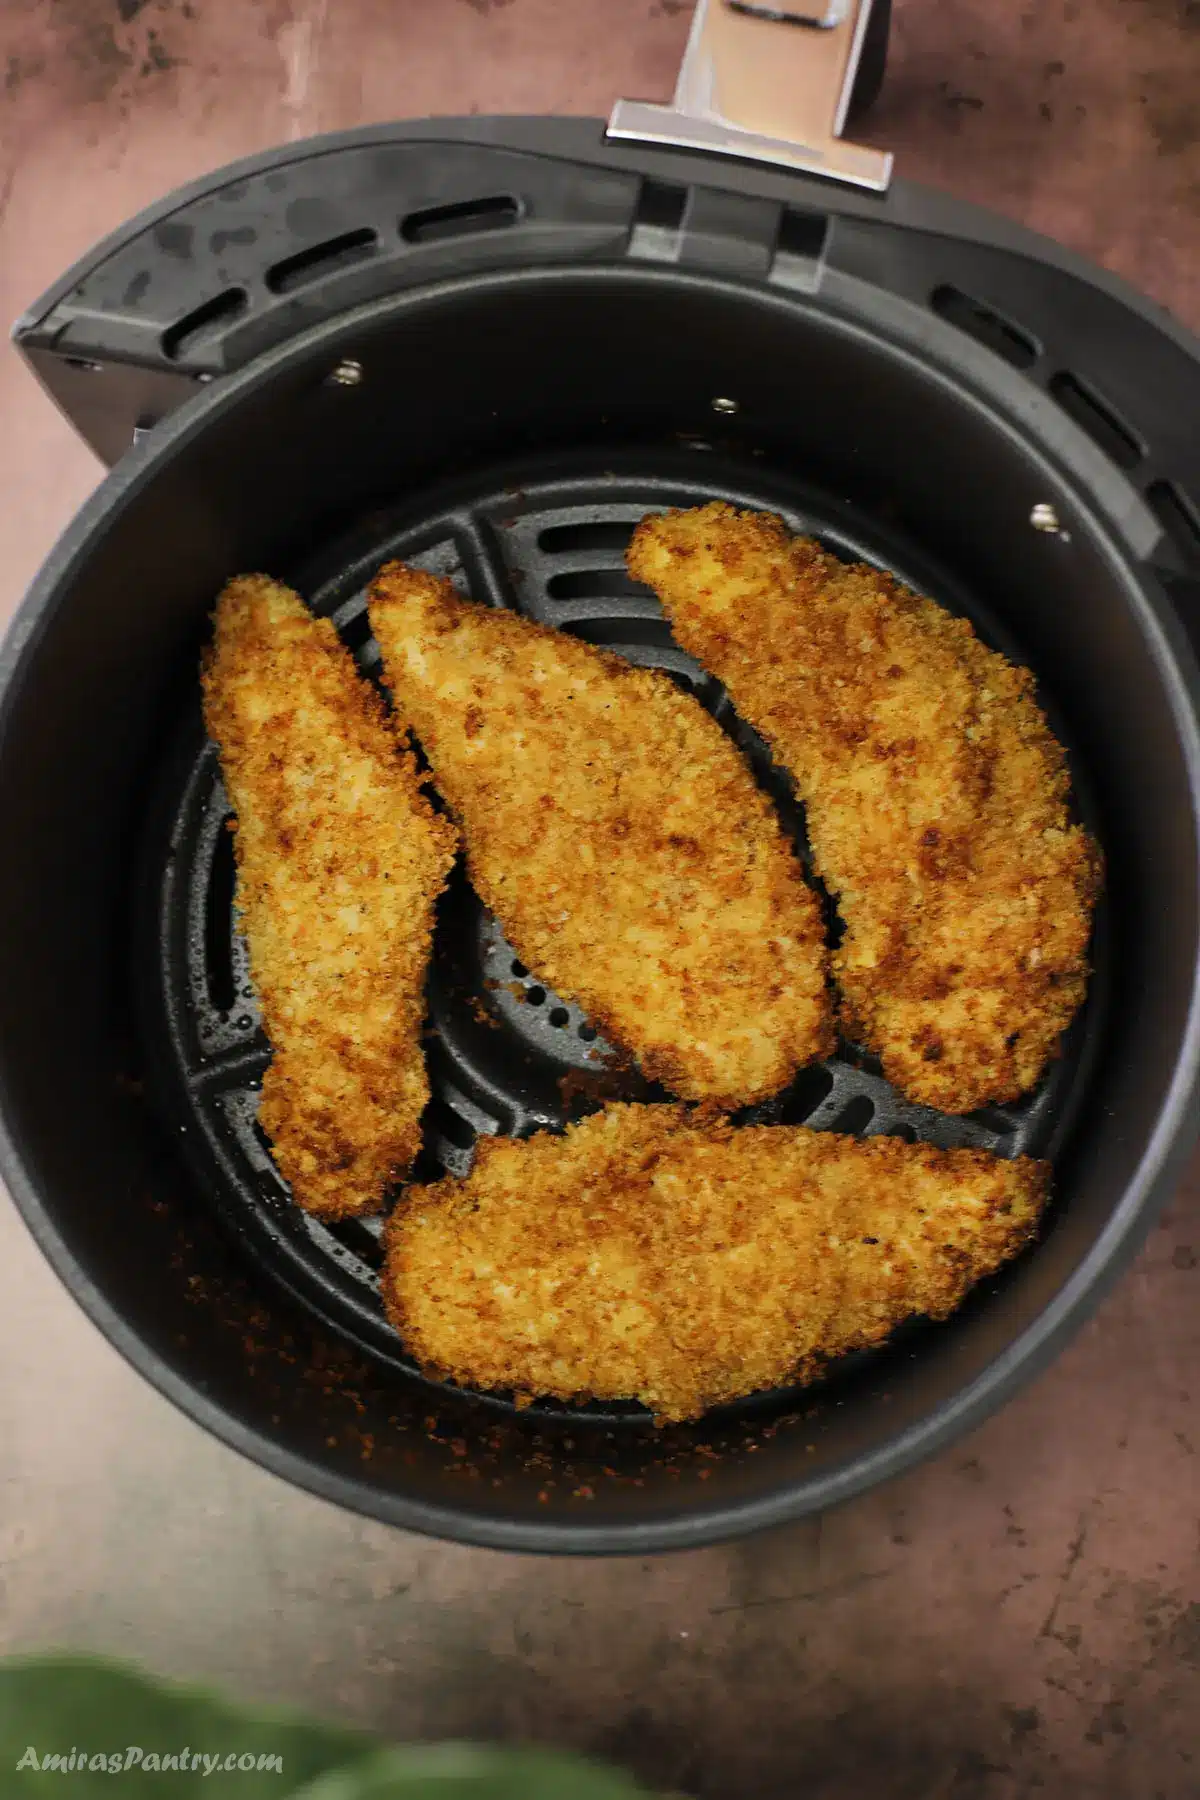 Chicken tenders in the air fryer basket.